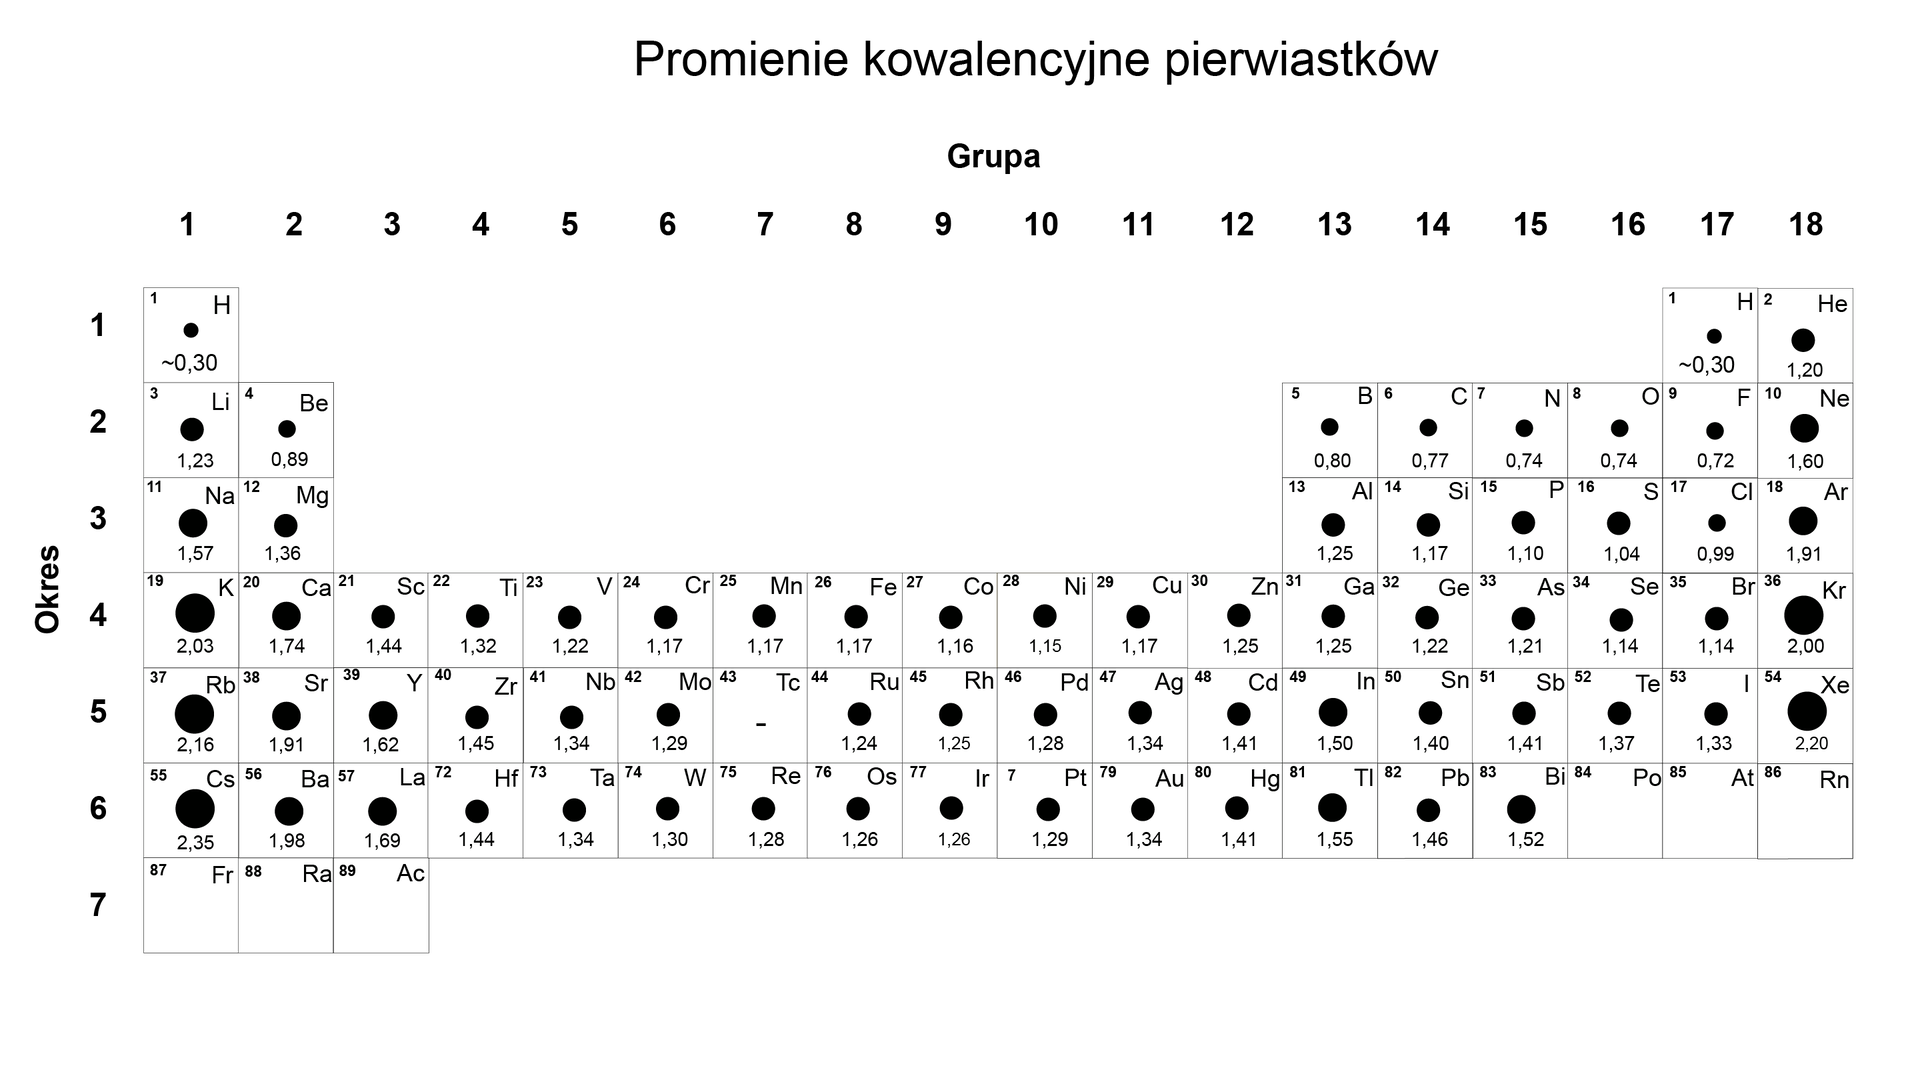 Na ilustracji jest układ okresowy pierwiastków z wartościami promieni kowalencyjnych podanymi w jednostkach Å (angstrem). Podano także liczbę atomową. Promień kowalencyjny w atomie fluoru wynosi 0,72 angstrema, w atomie chloru 0,99, w atomie jodu 1,33, w atomie wodoru 0,30 angstrema. 